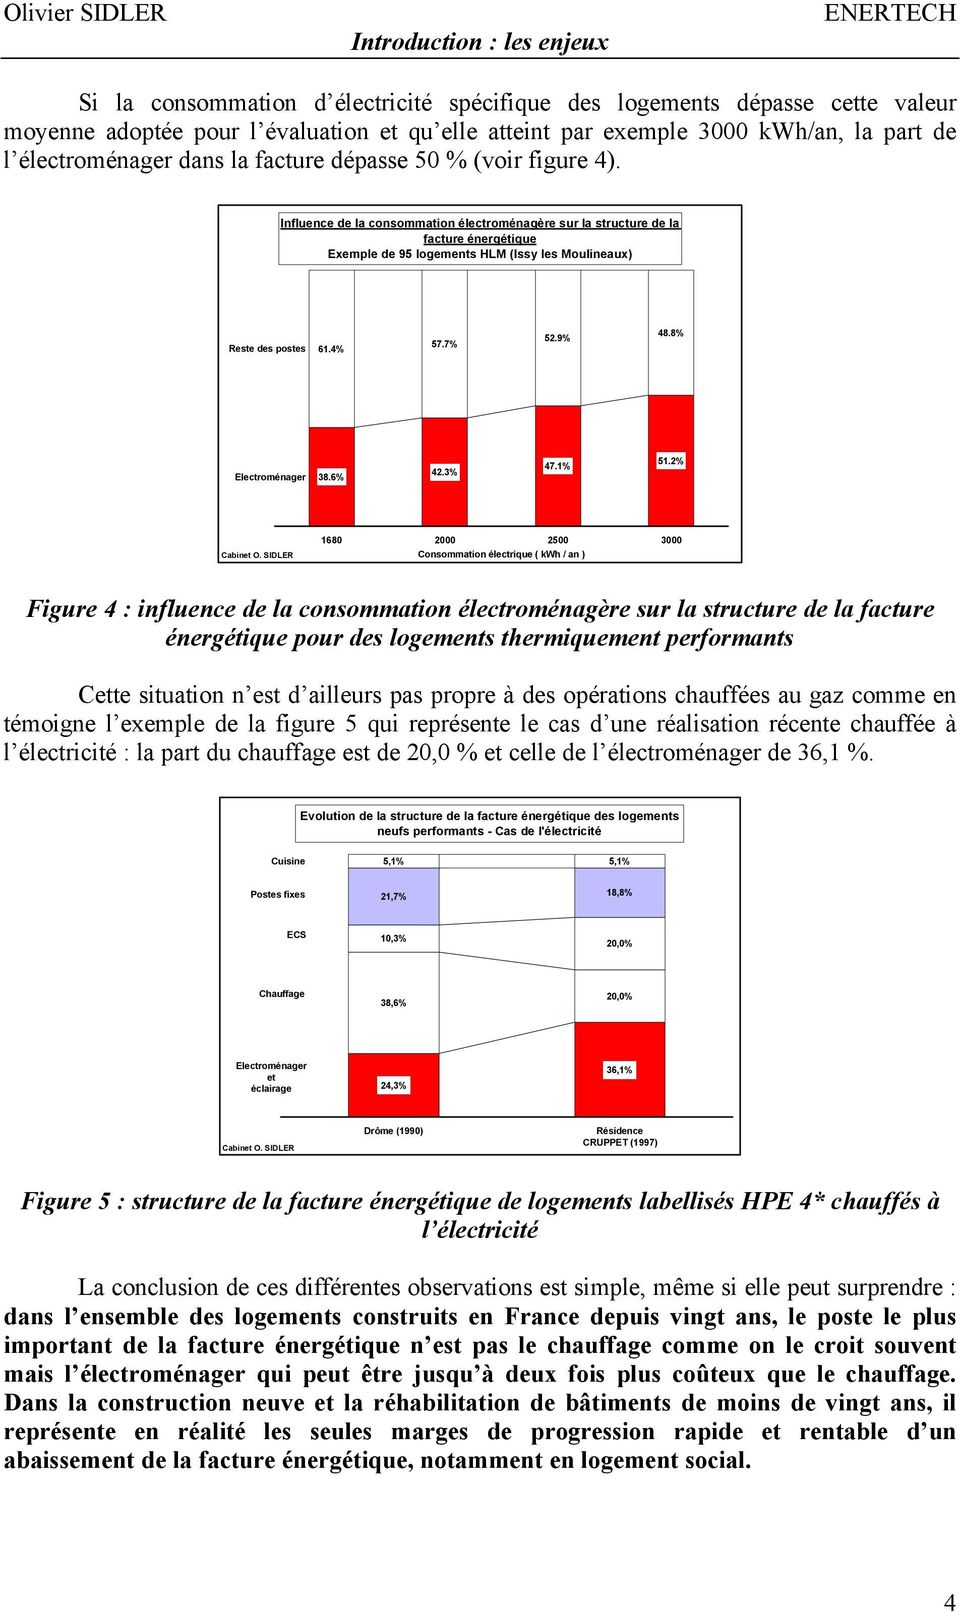 Influence de la consommation électroménagère sur la structure de la facture énergétique Exemple de 95 logements HLM (Issy les Moulineaux) Reste des postes 61.4% 57.7% 52.9% 48.8% Electroménager 38.